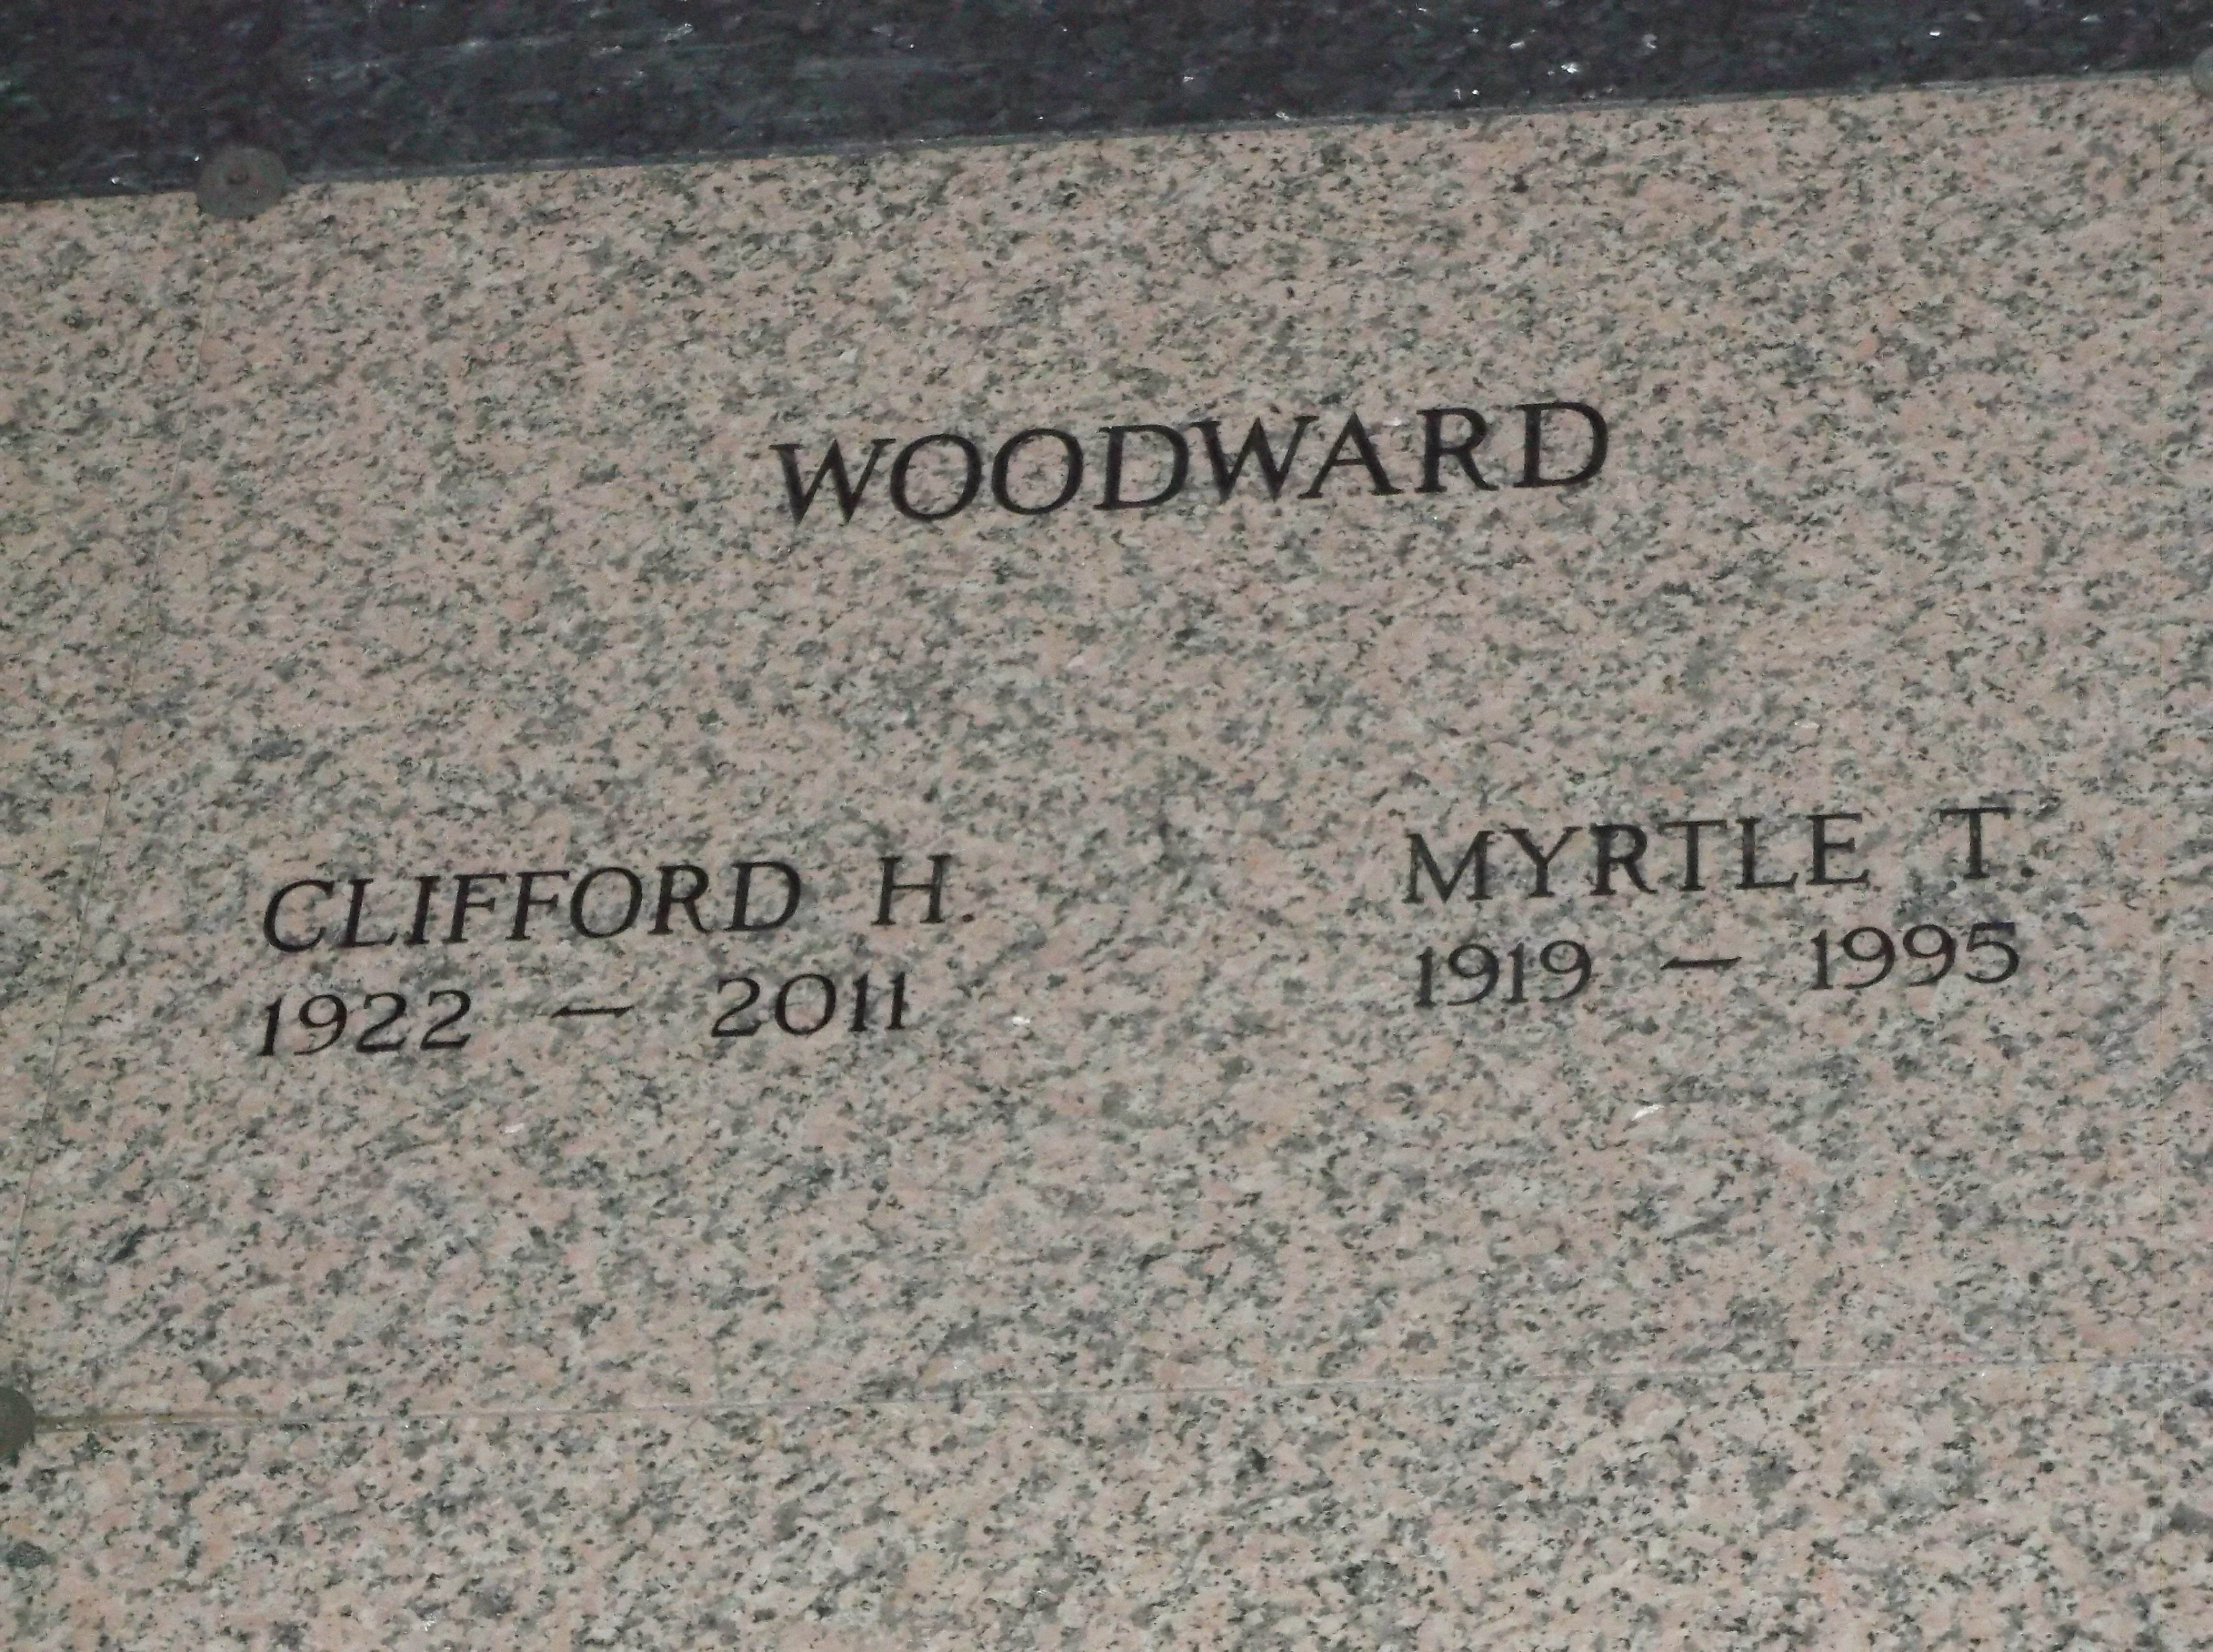 Myrtle T Woodward